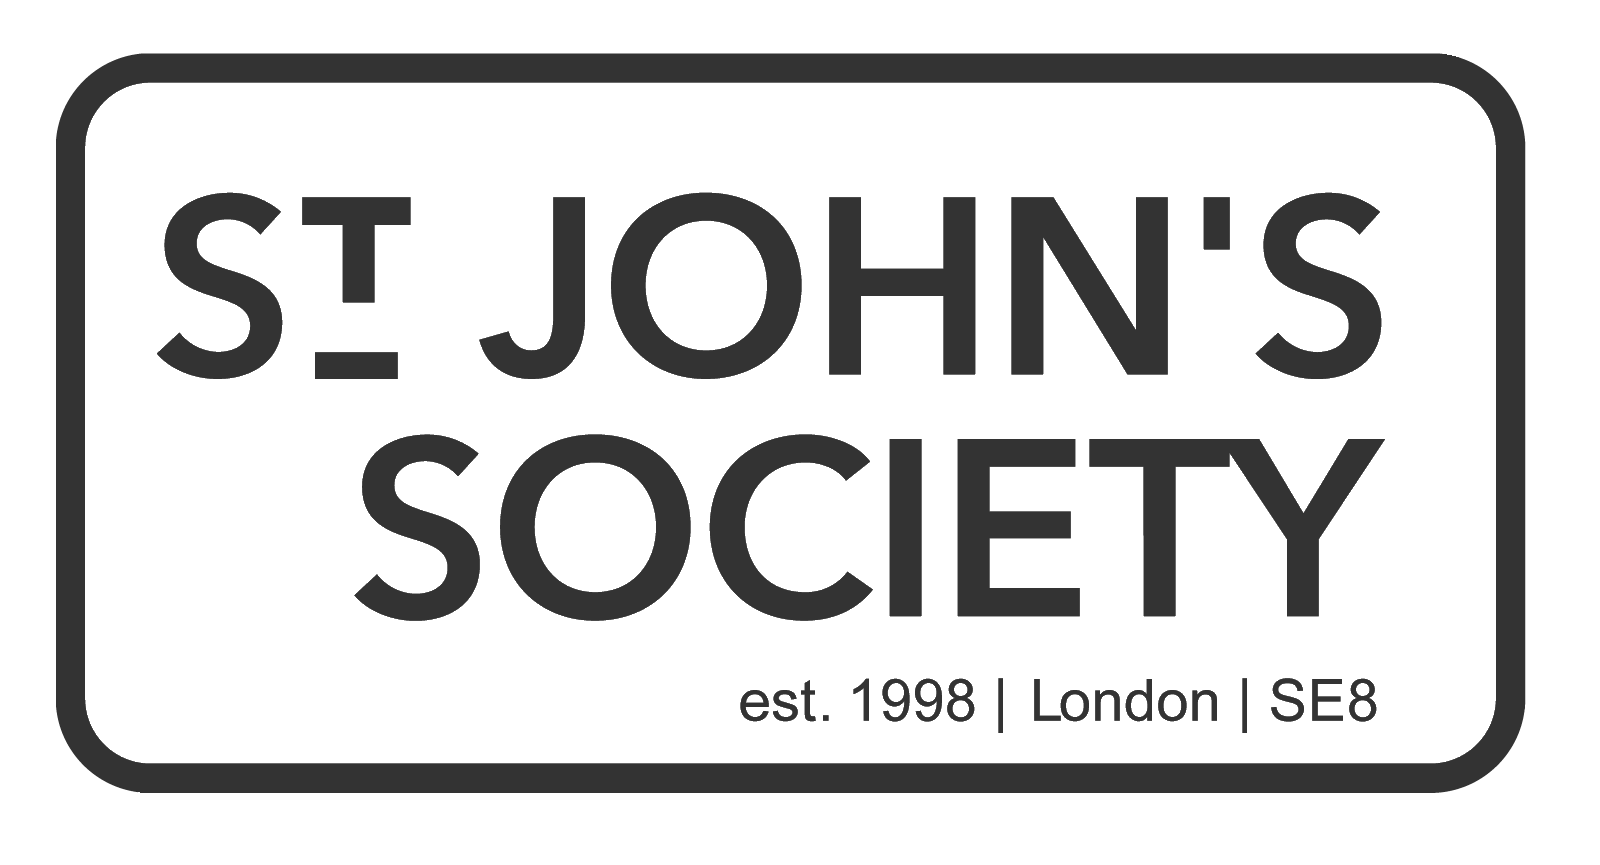 The St Johns Society